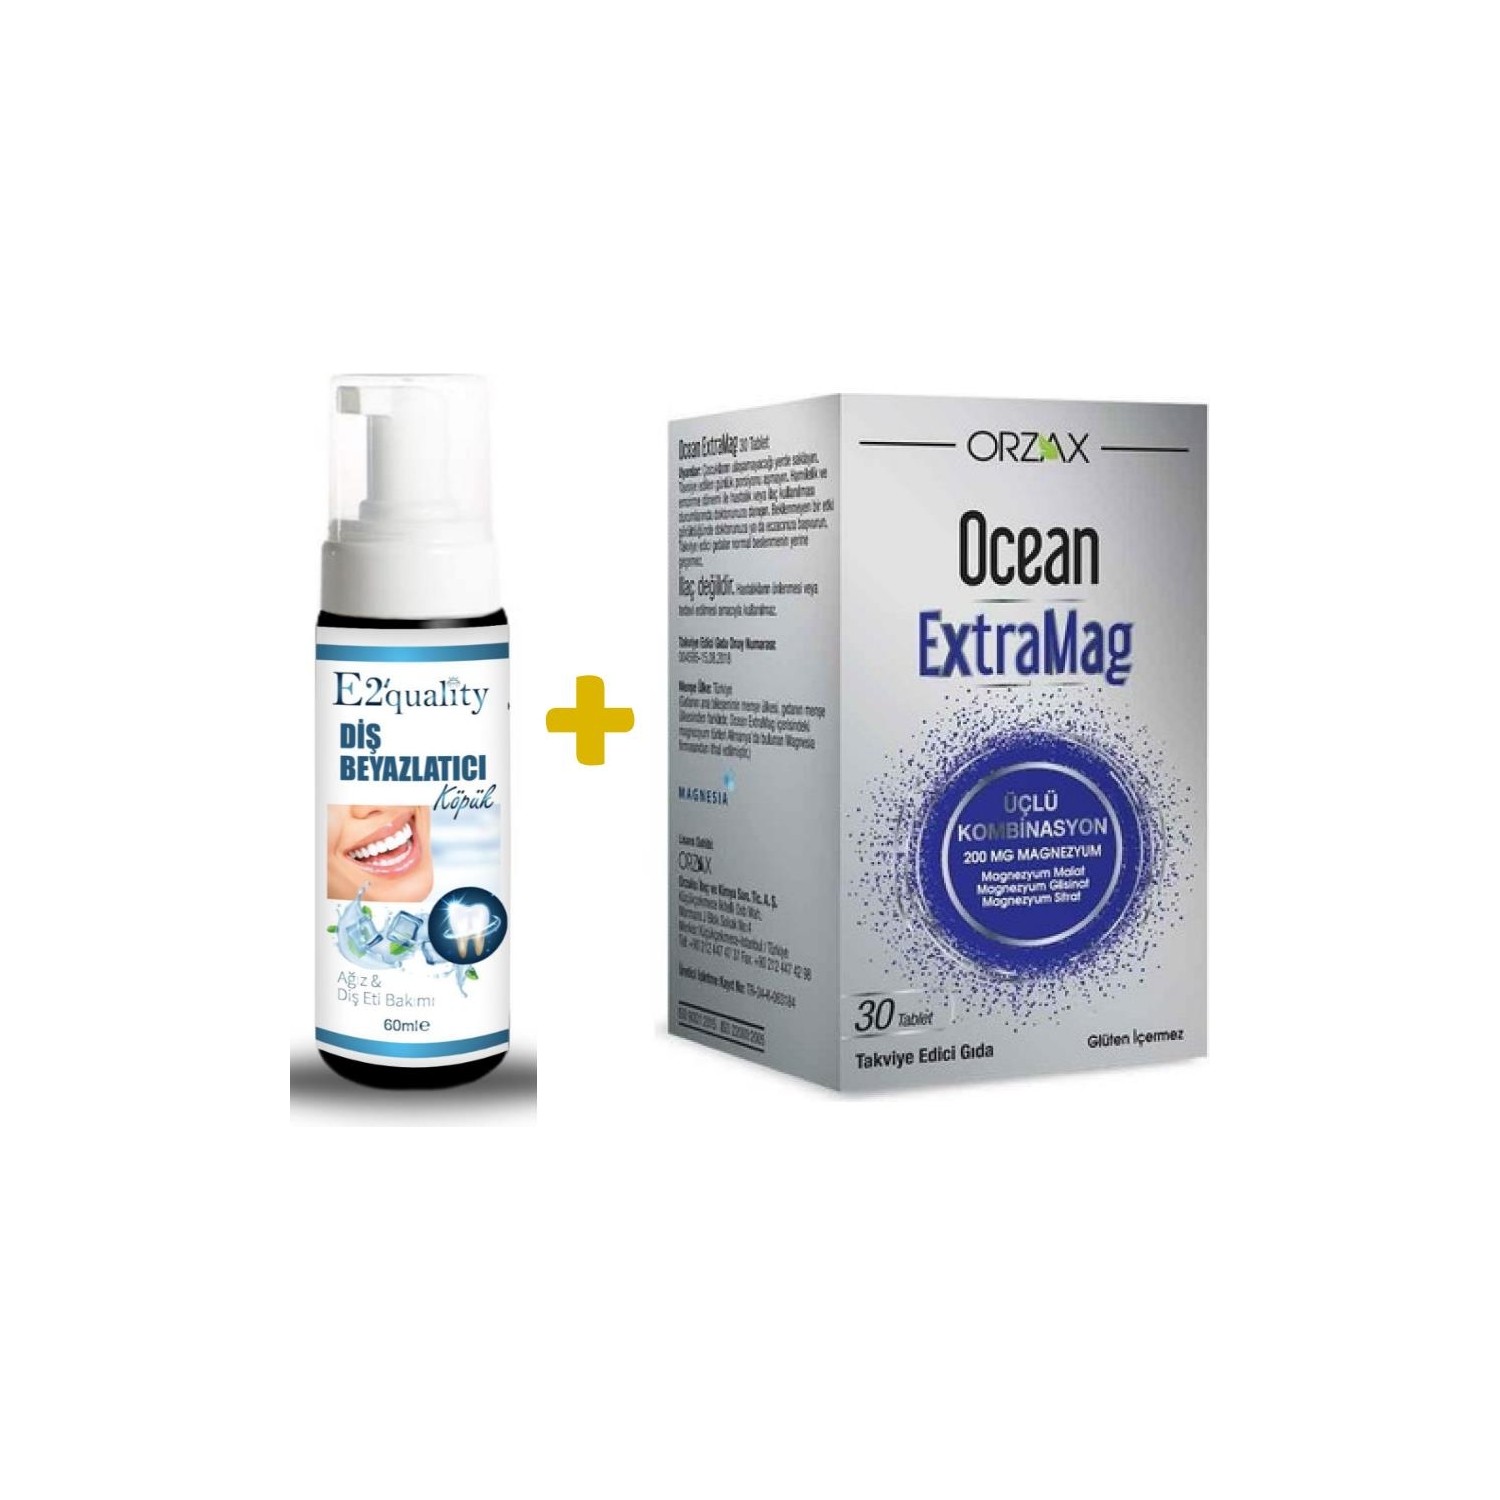 Отбеливающая пена для зубов Orzax E2' Quality + Комбинированная добавка Orzax Ocean Extramag Tip, 30 таблеток